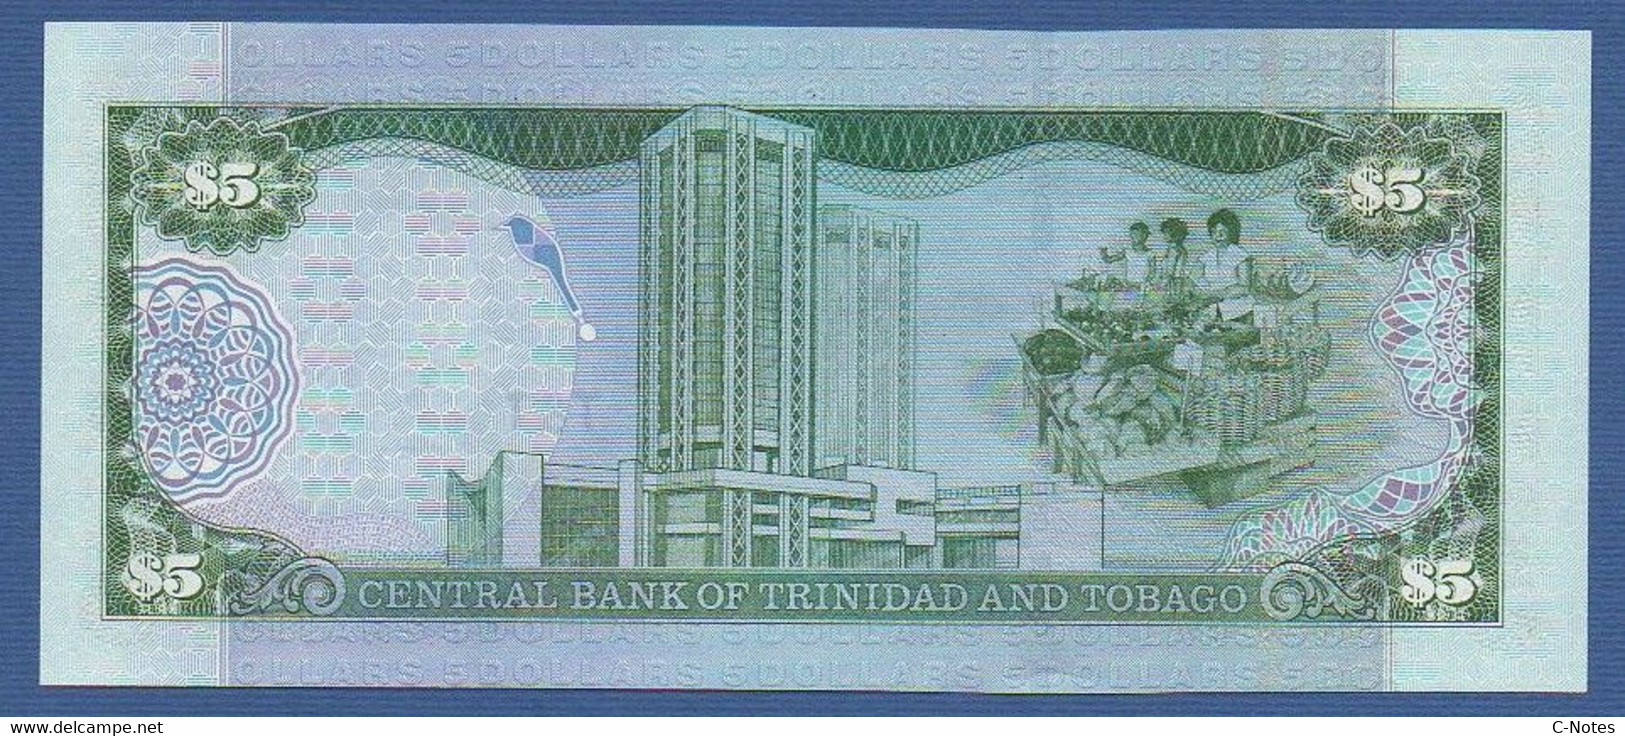 TRINIDAD & TOBAGO - P.42b – 5 Dollars 2002 UNC, Serie AM510295 - Trindad & Tobago